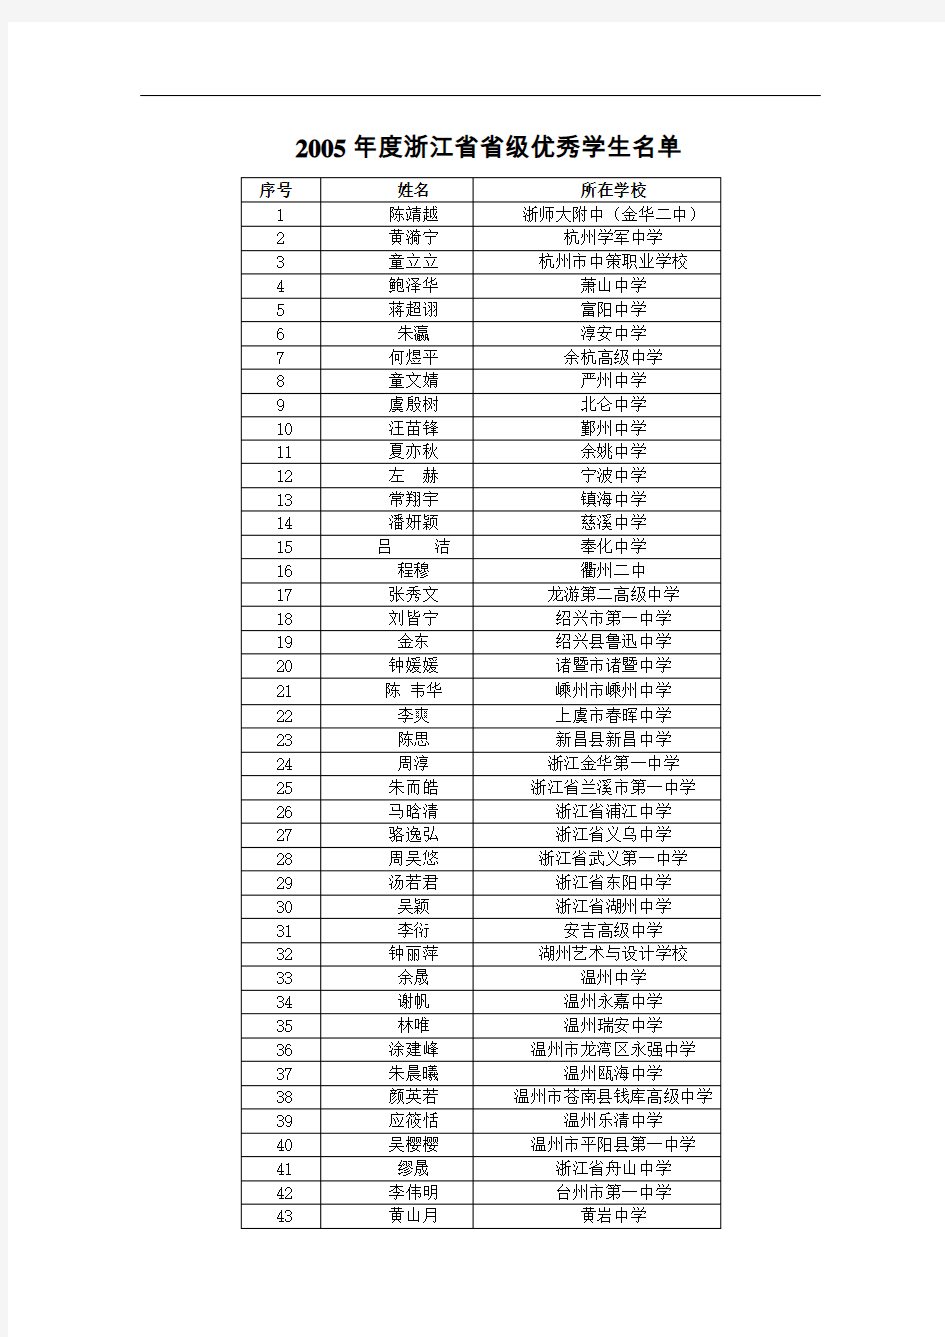 2005年度浙江省省级优秀学生名单